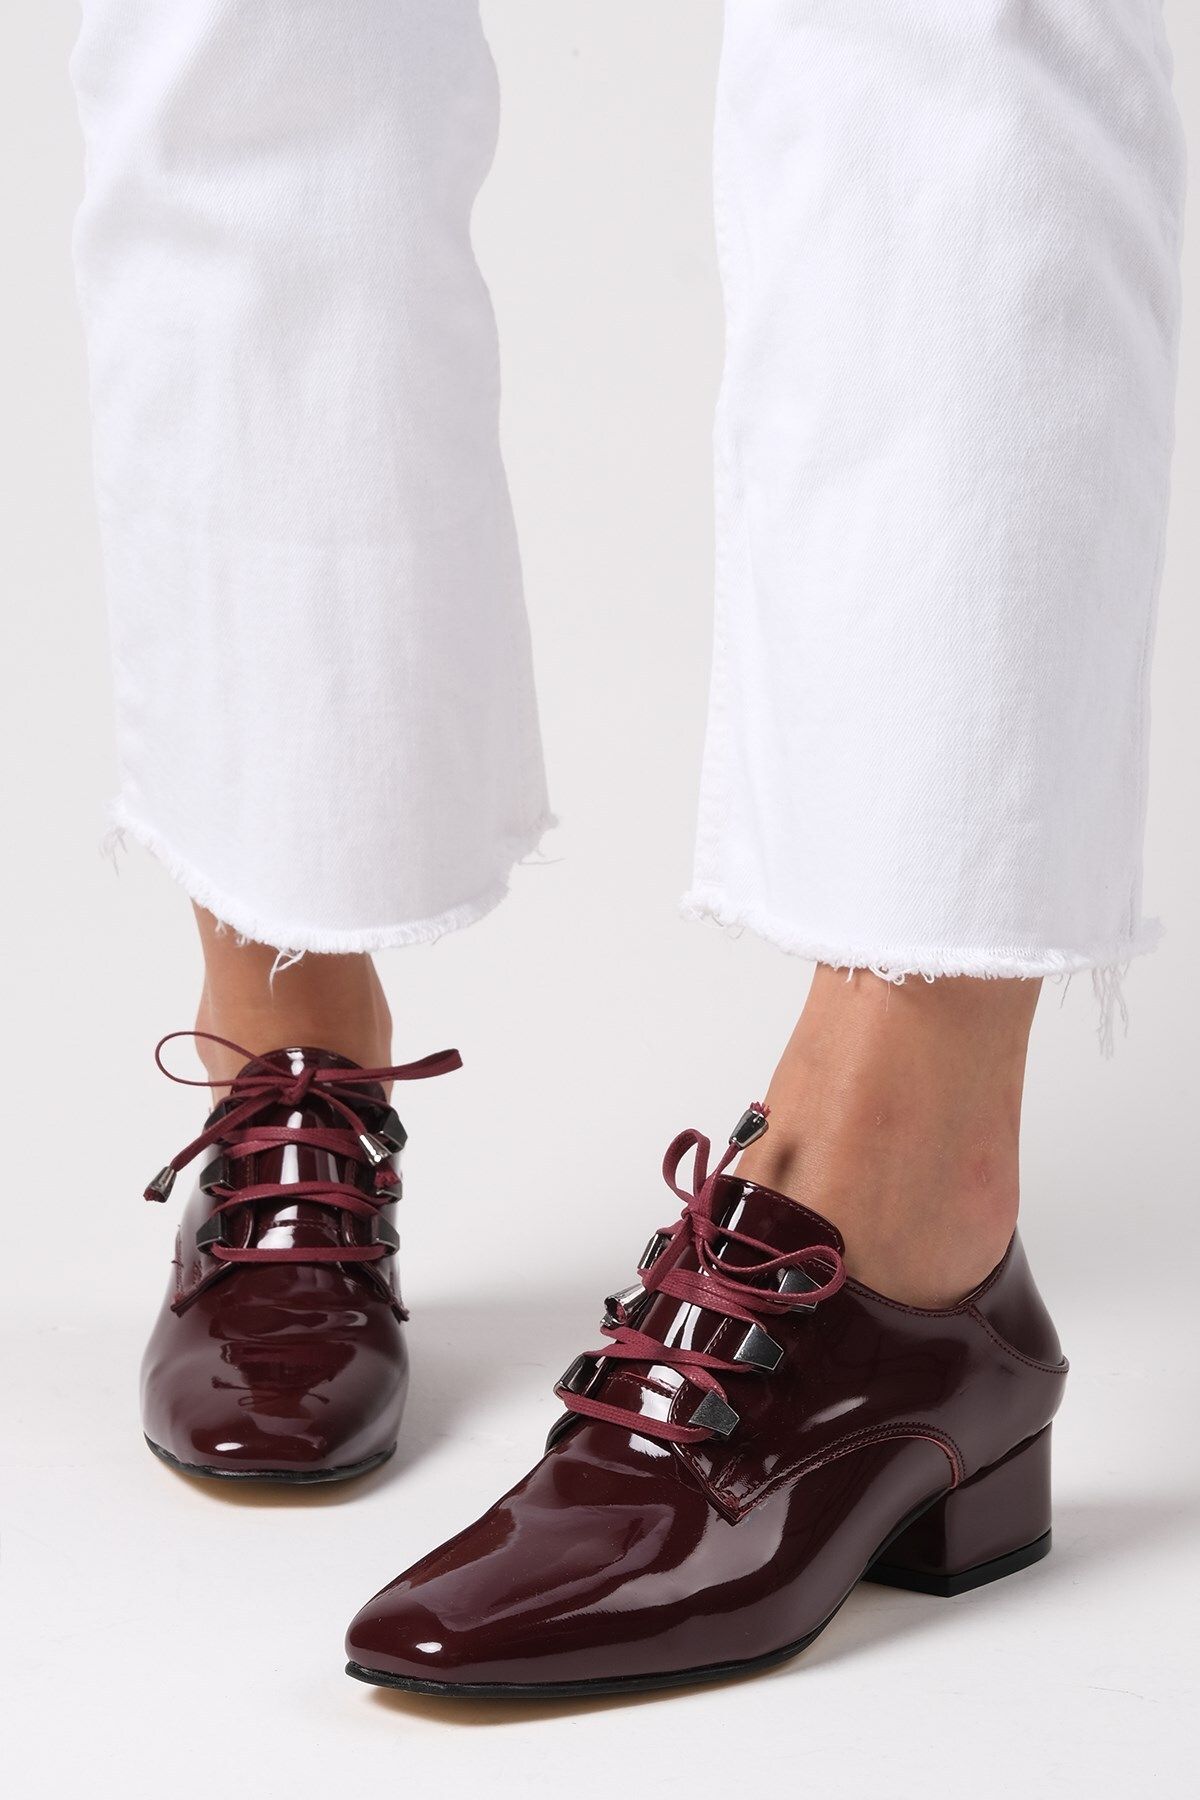 Mio Gusto Jasmine Bordo Renk Rugan Kadın Kısa Topuklu Bağcıklı Ayakkabı